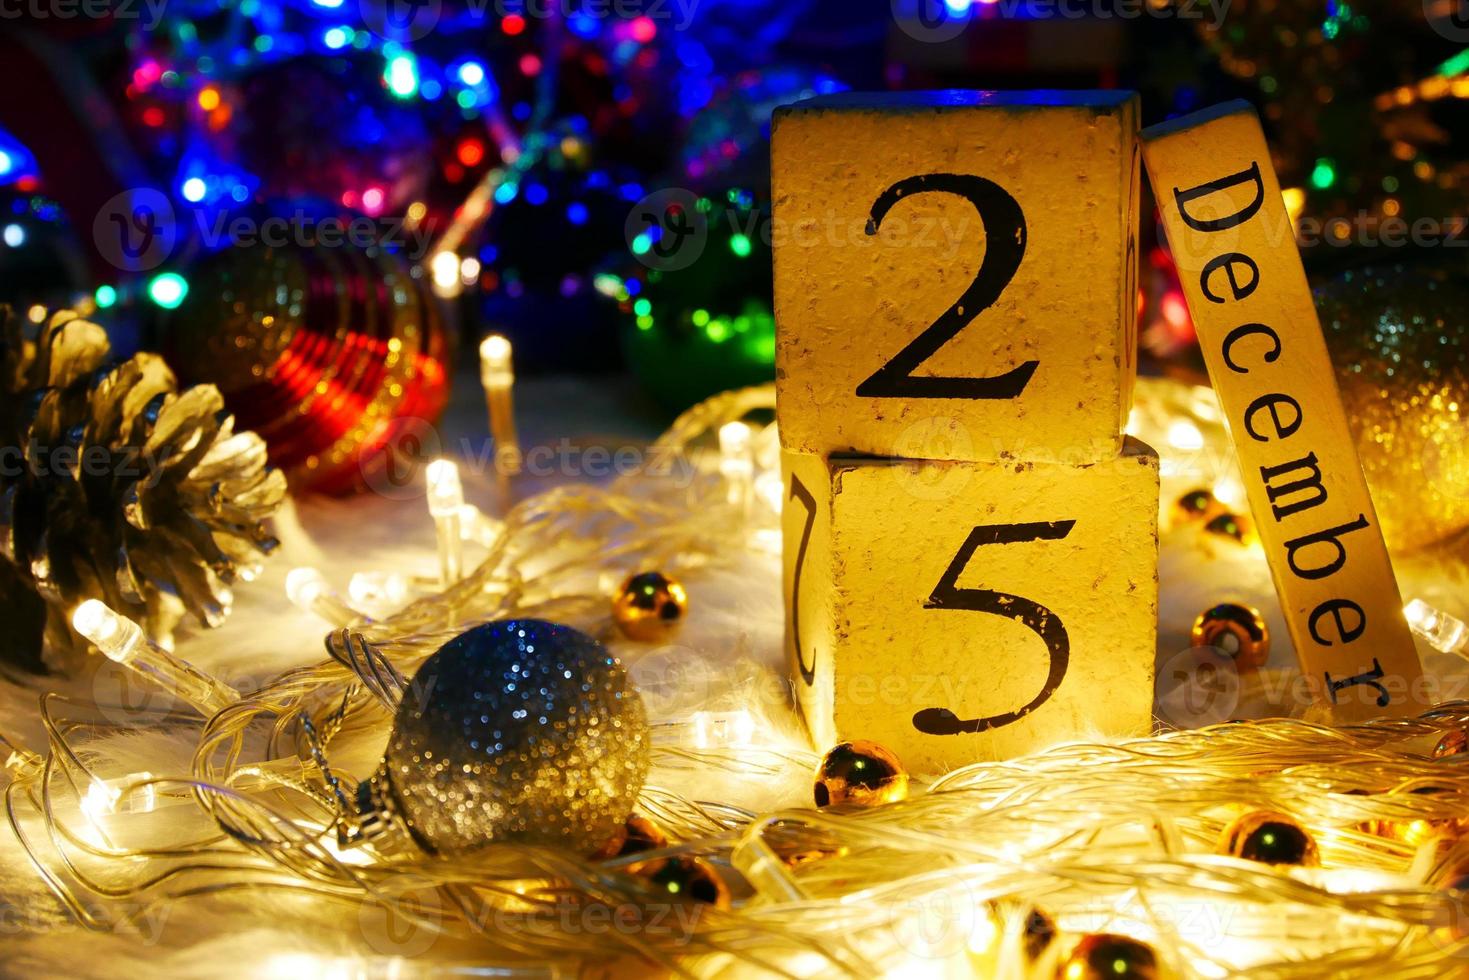 juldag tema med dekorera och fir festive.wood kub block kalender nuvarande datum 25 och månad december.celebration jul och x'mas koncept. foto